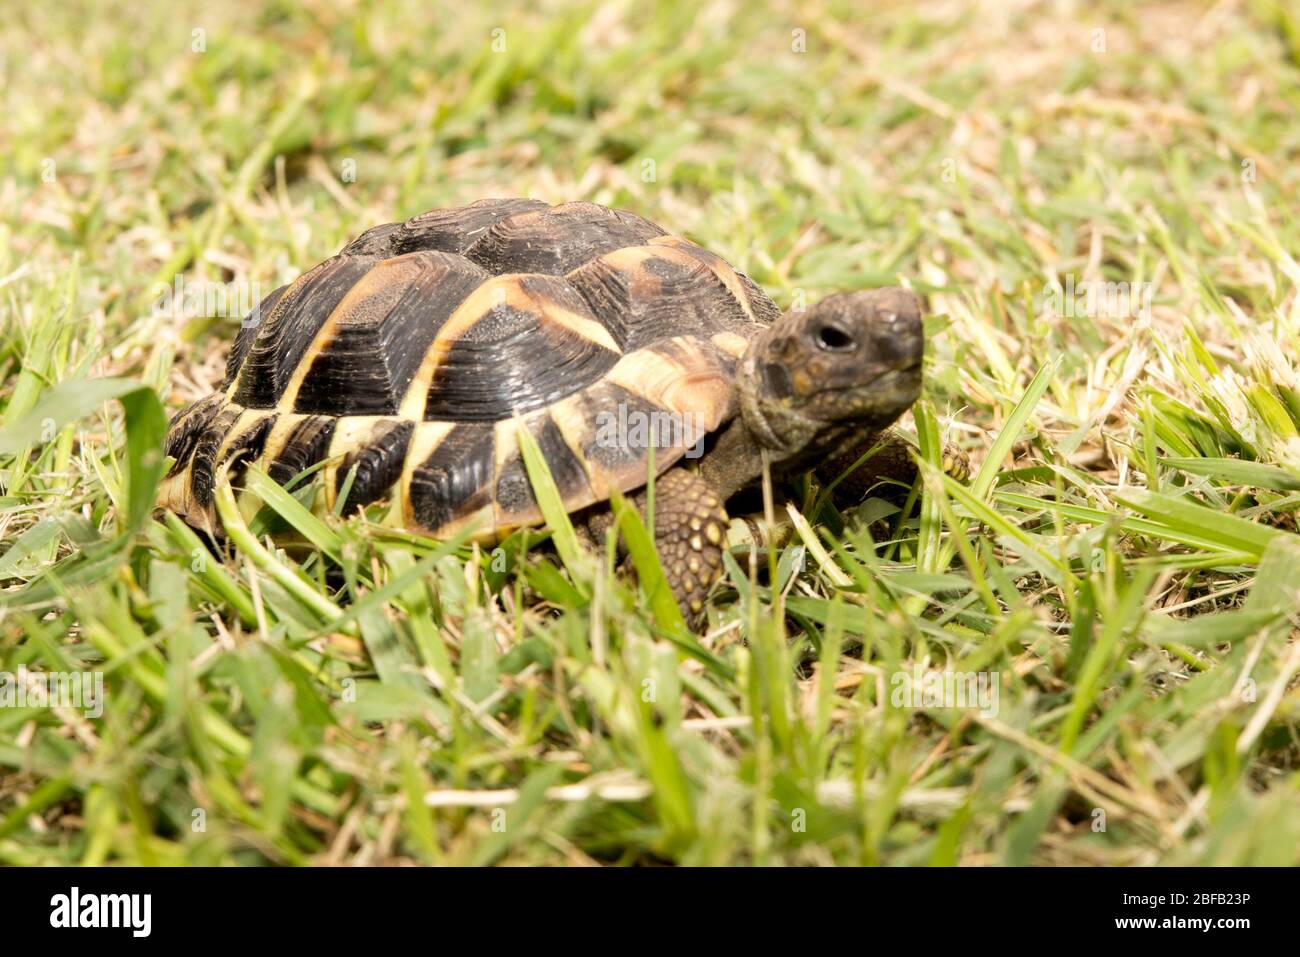 la tortue dans l'herbe verte se déplace lentement Banque D'Images